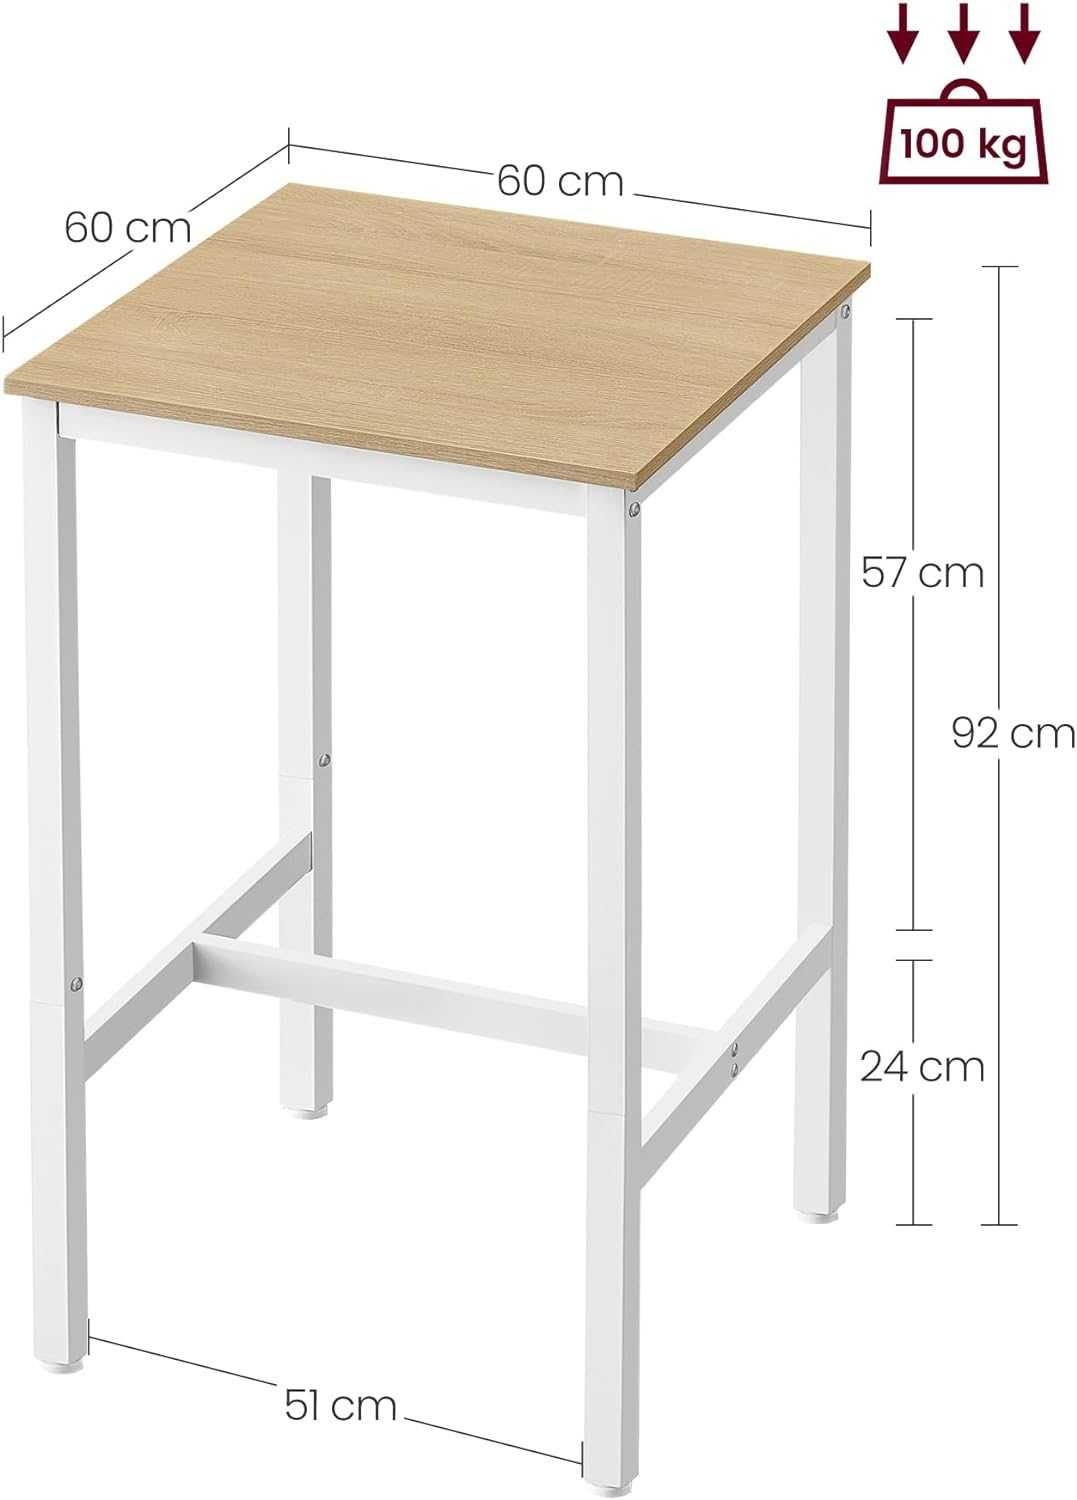 Nowy wysoki stolik / stół barowy / półka / VASAGLE !6107!